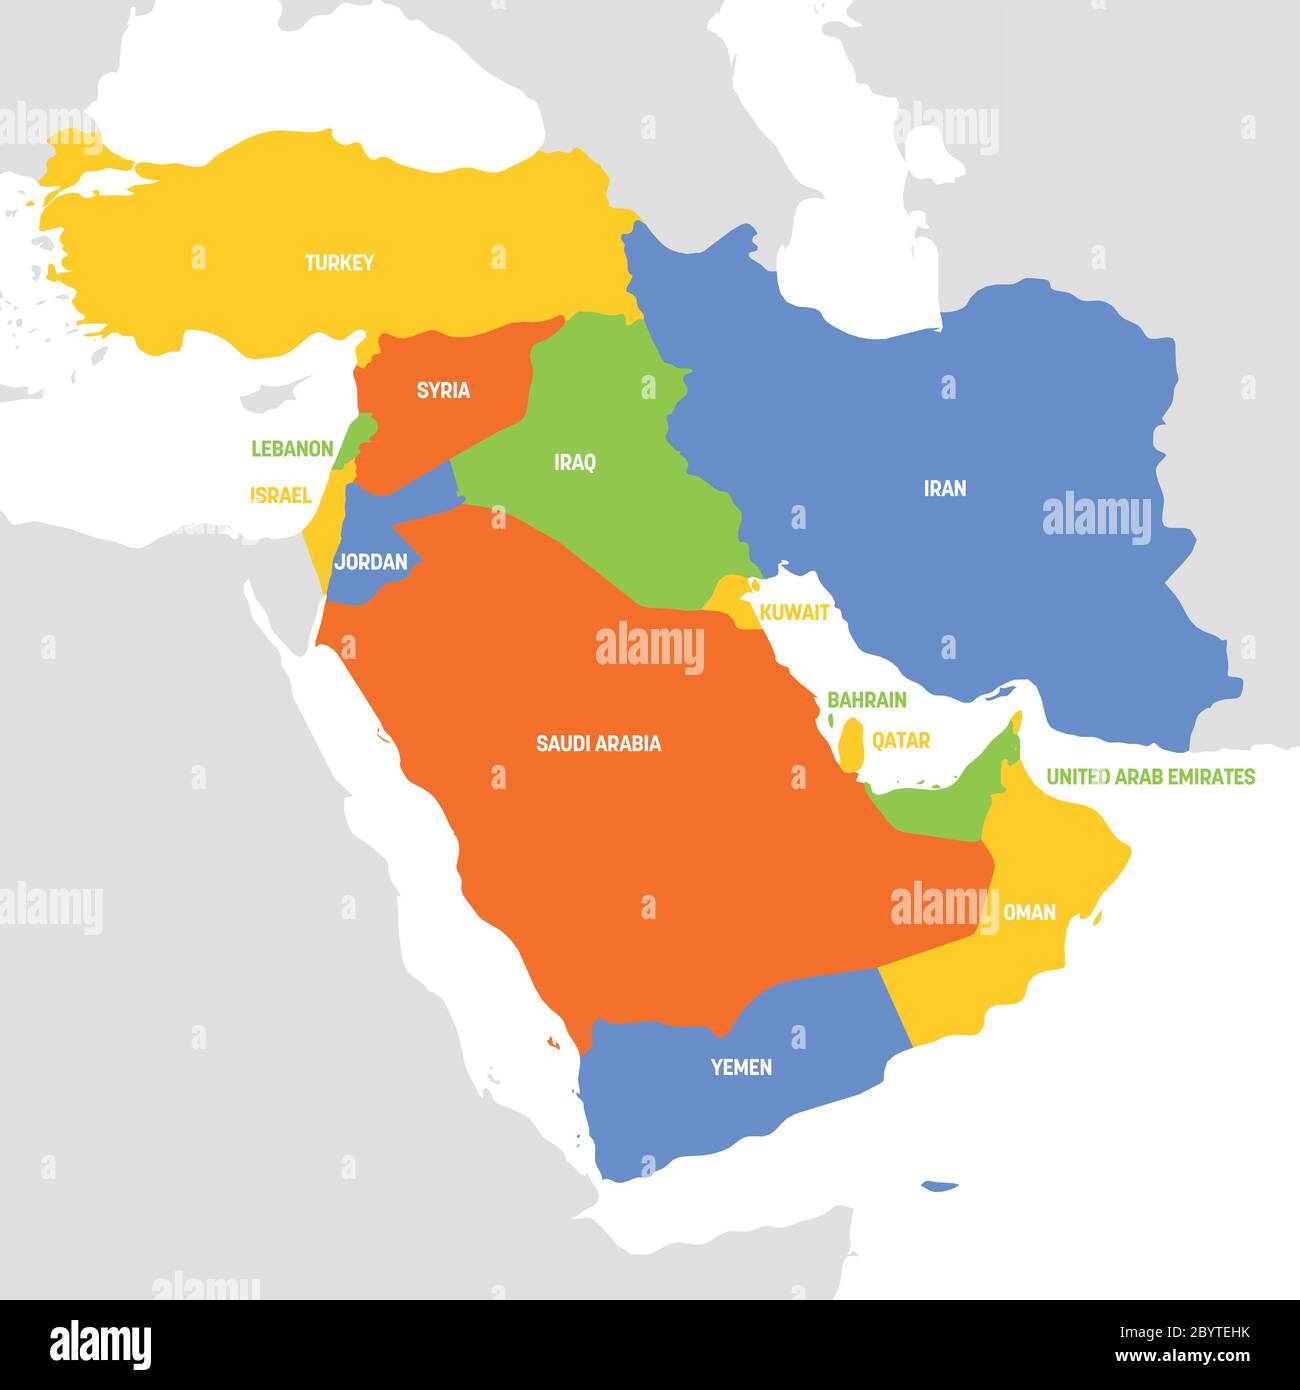 Région de l'Asie occidentale. Carte des pays d'Asie occidentale ou du Moyen-Orient. Illustration vectorielle. Illustration de Vecteur